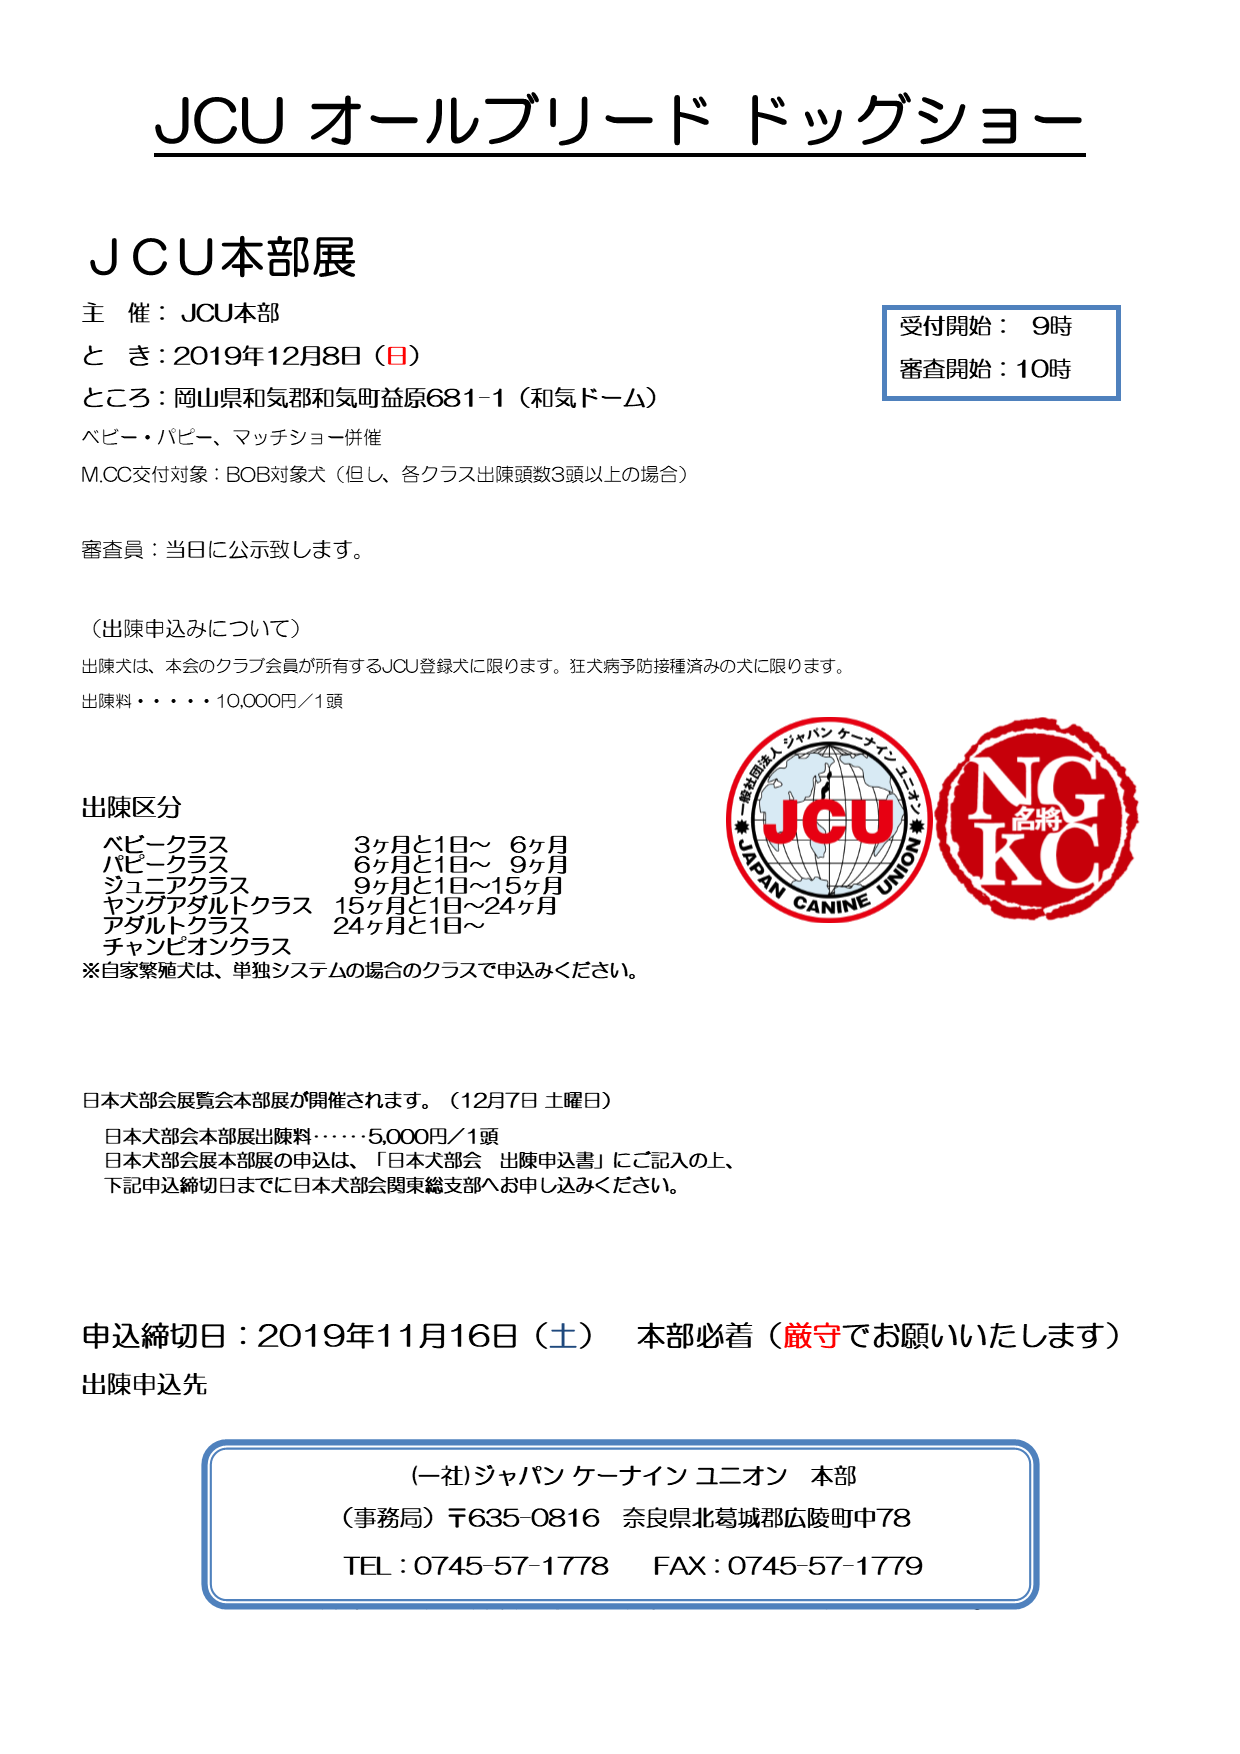 Jcu 一般 社団 法人 JCU活動情報